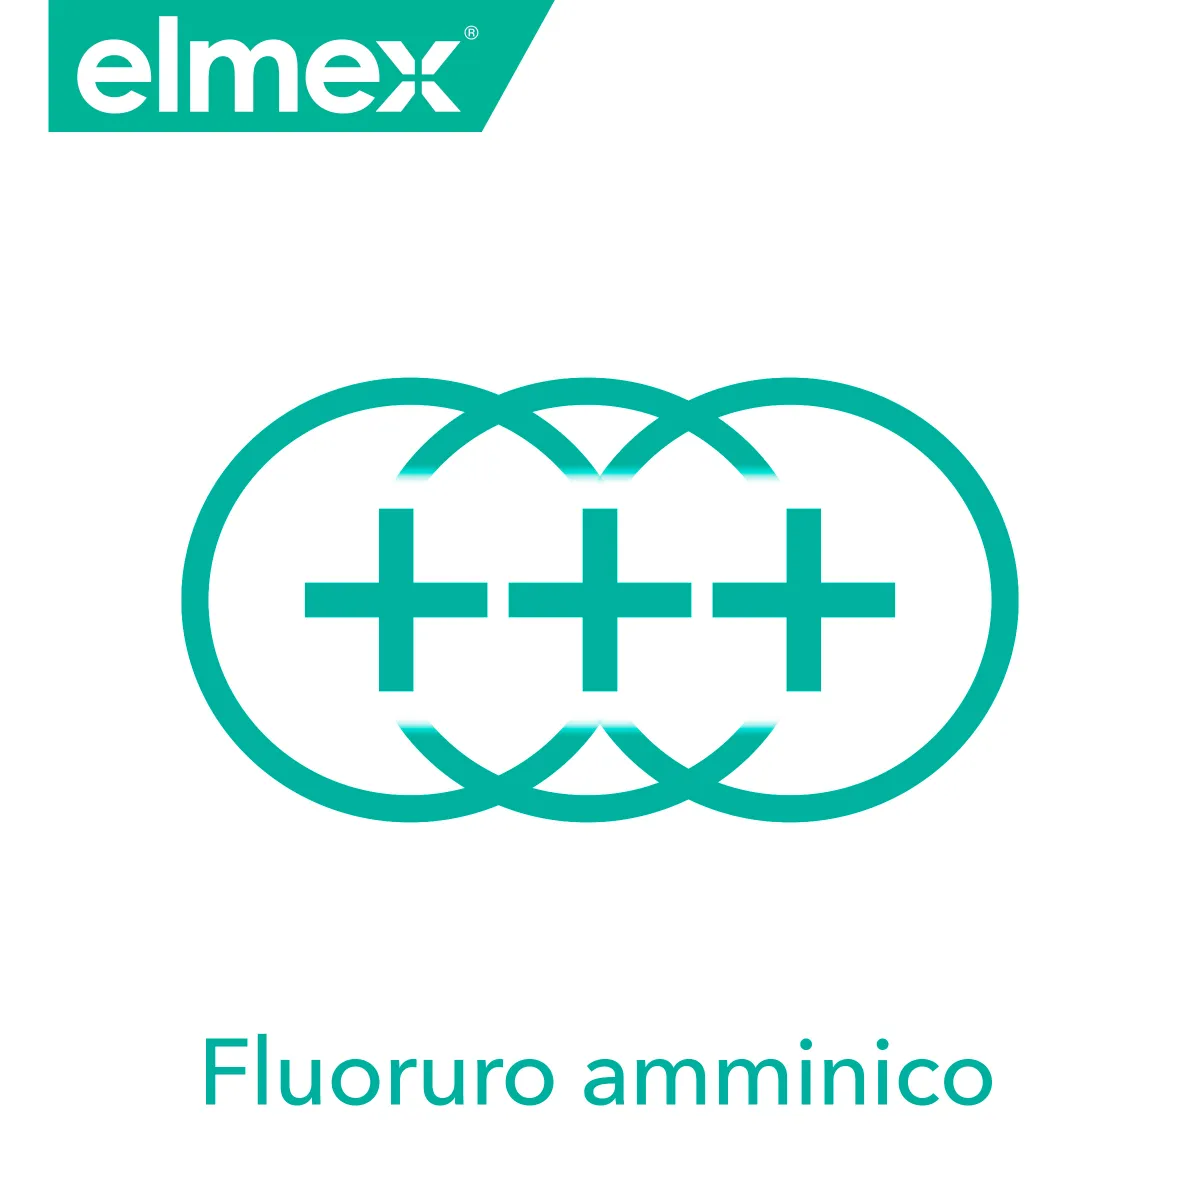 Elmex Sensitive Collutorio 400 Sensibilità Dentale